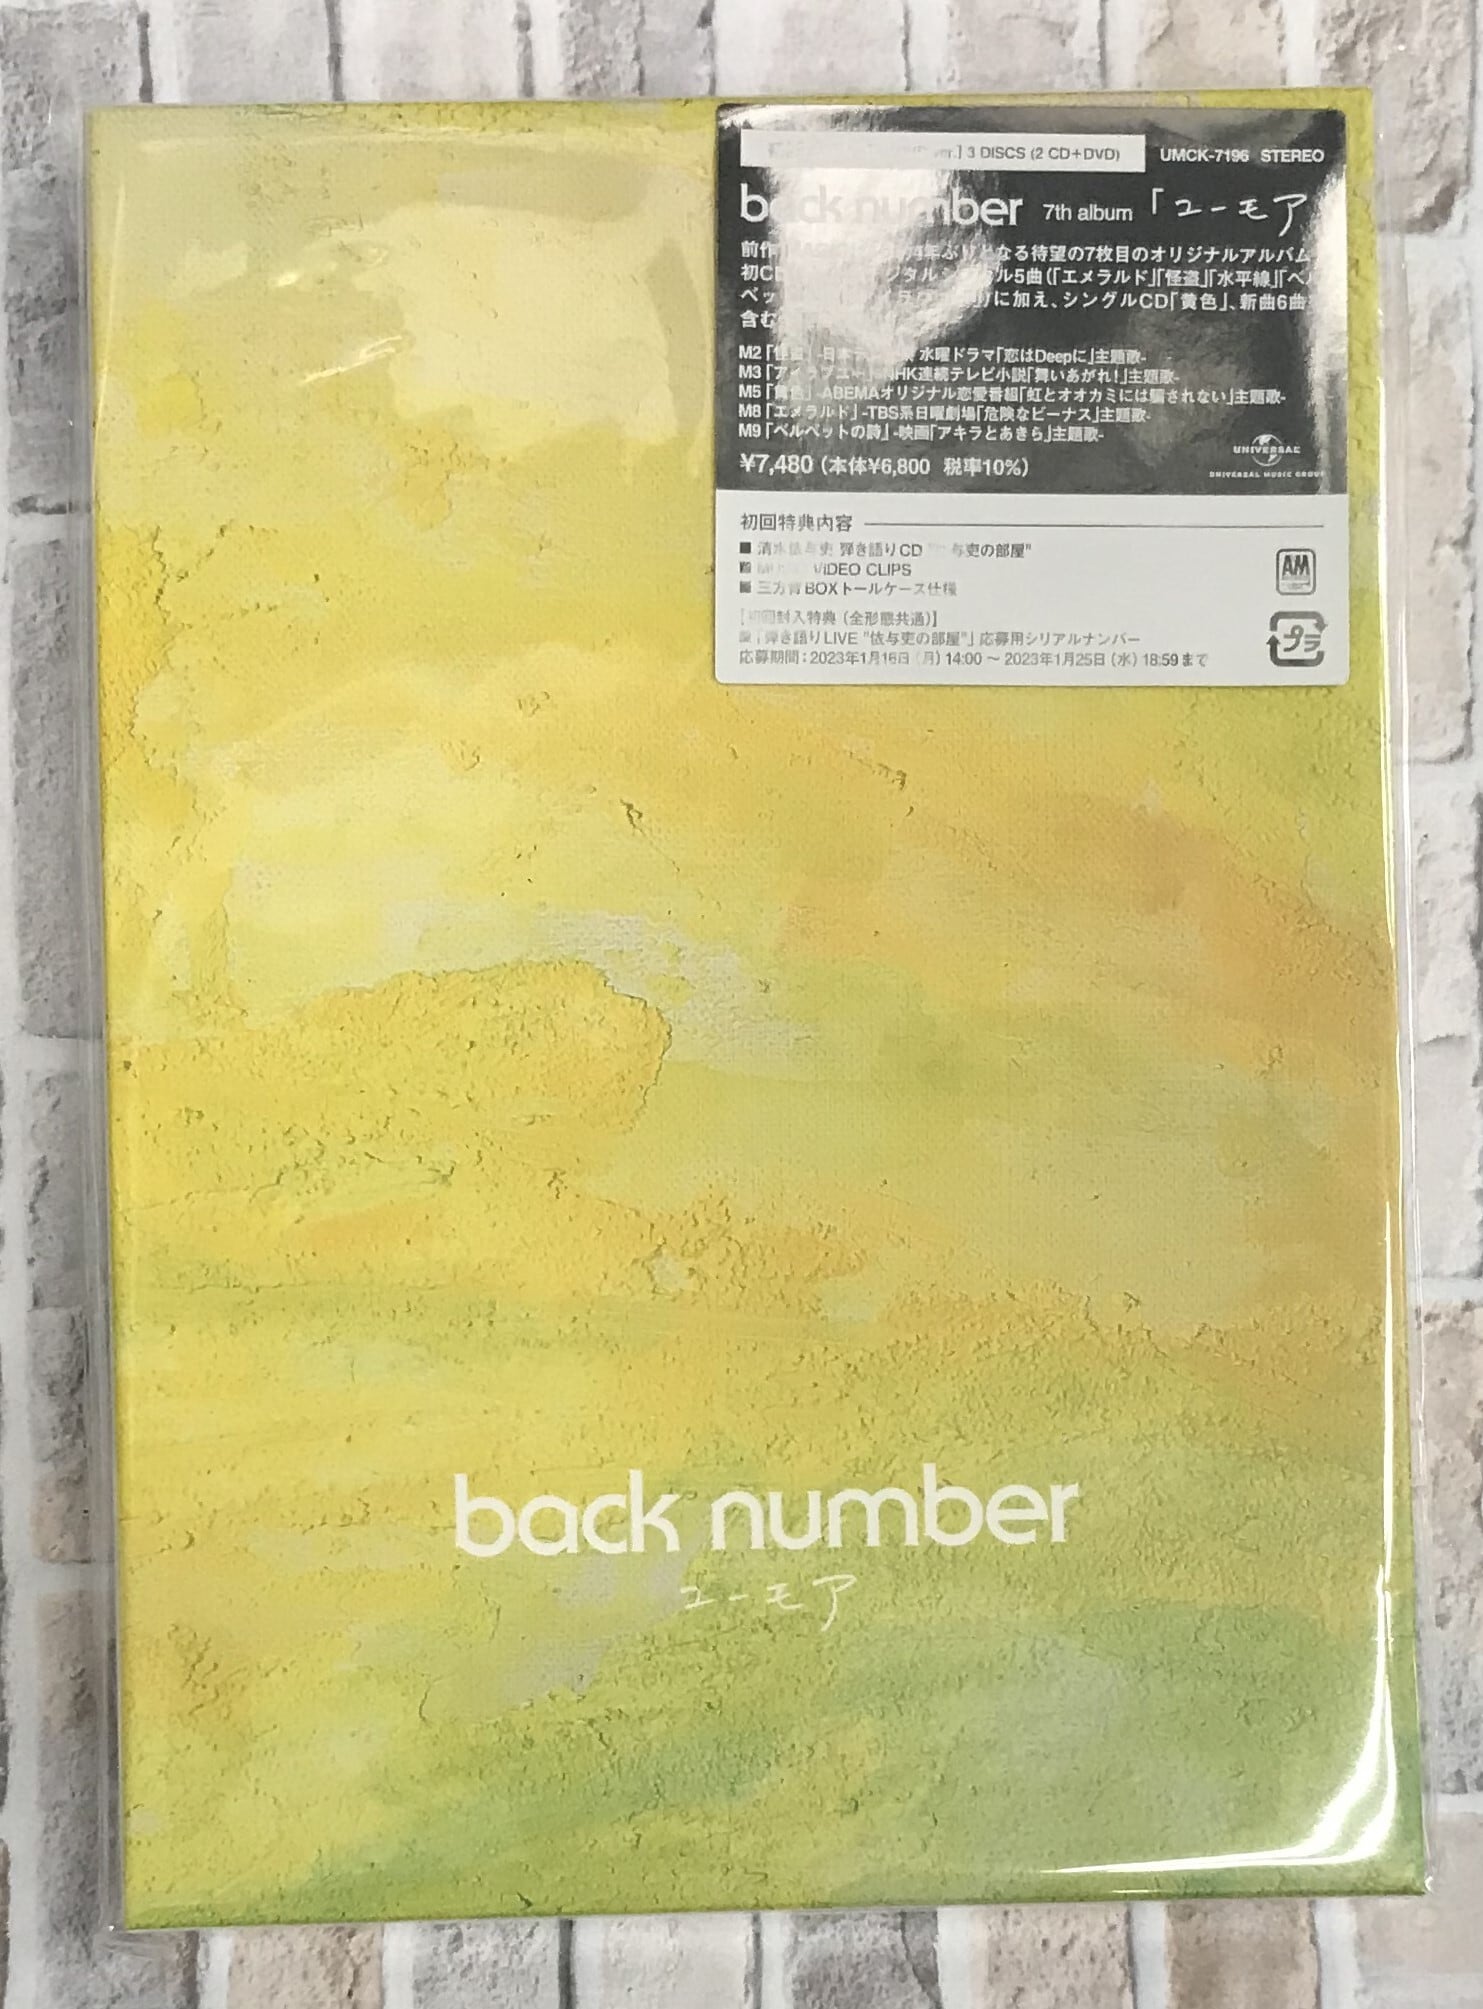 ポップス/ロック(邦楽)back number ユーモア 初回限定盤B DVD ver.